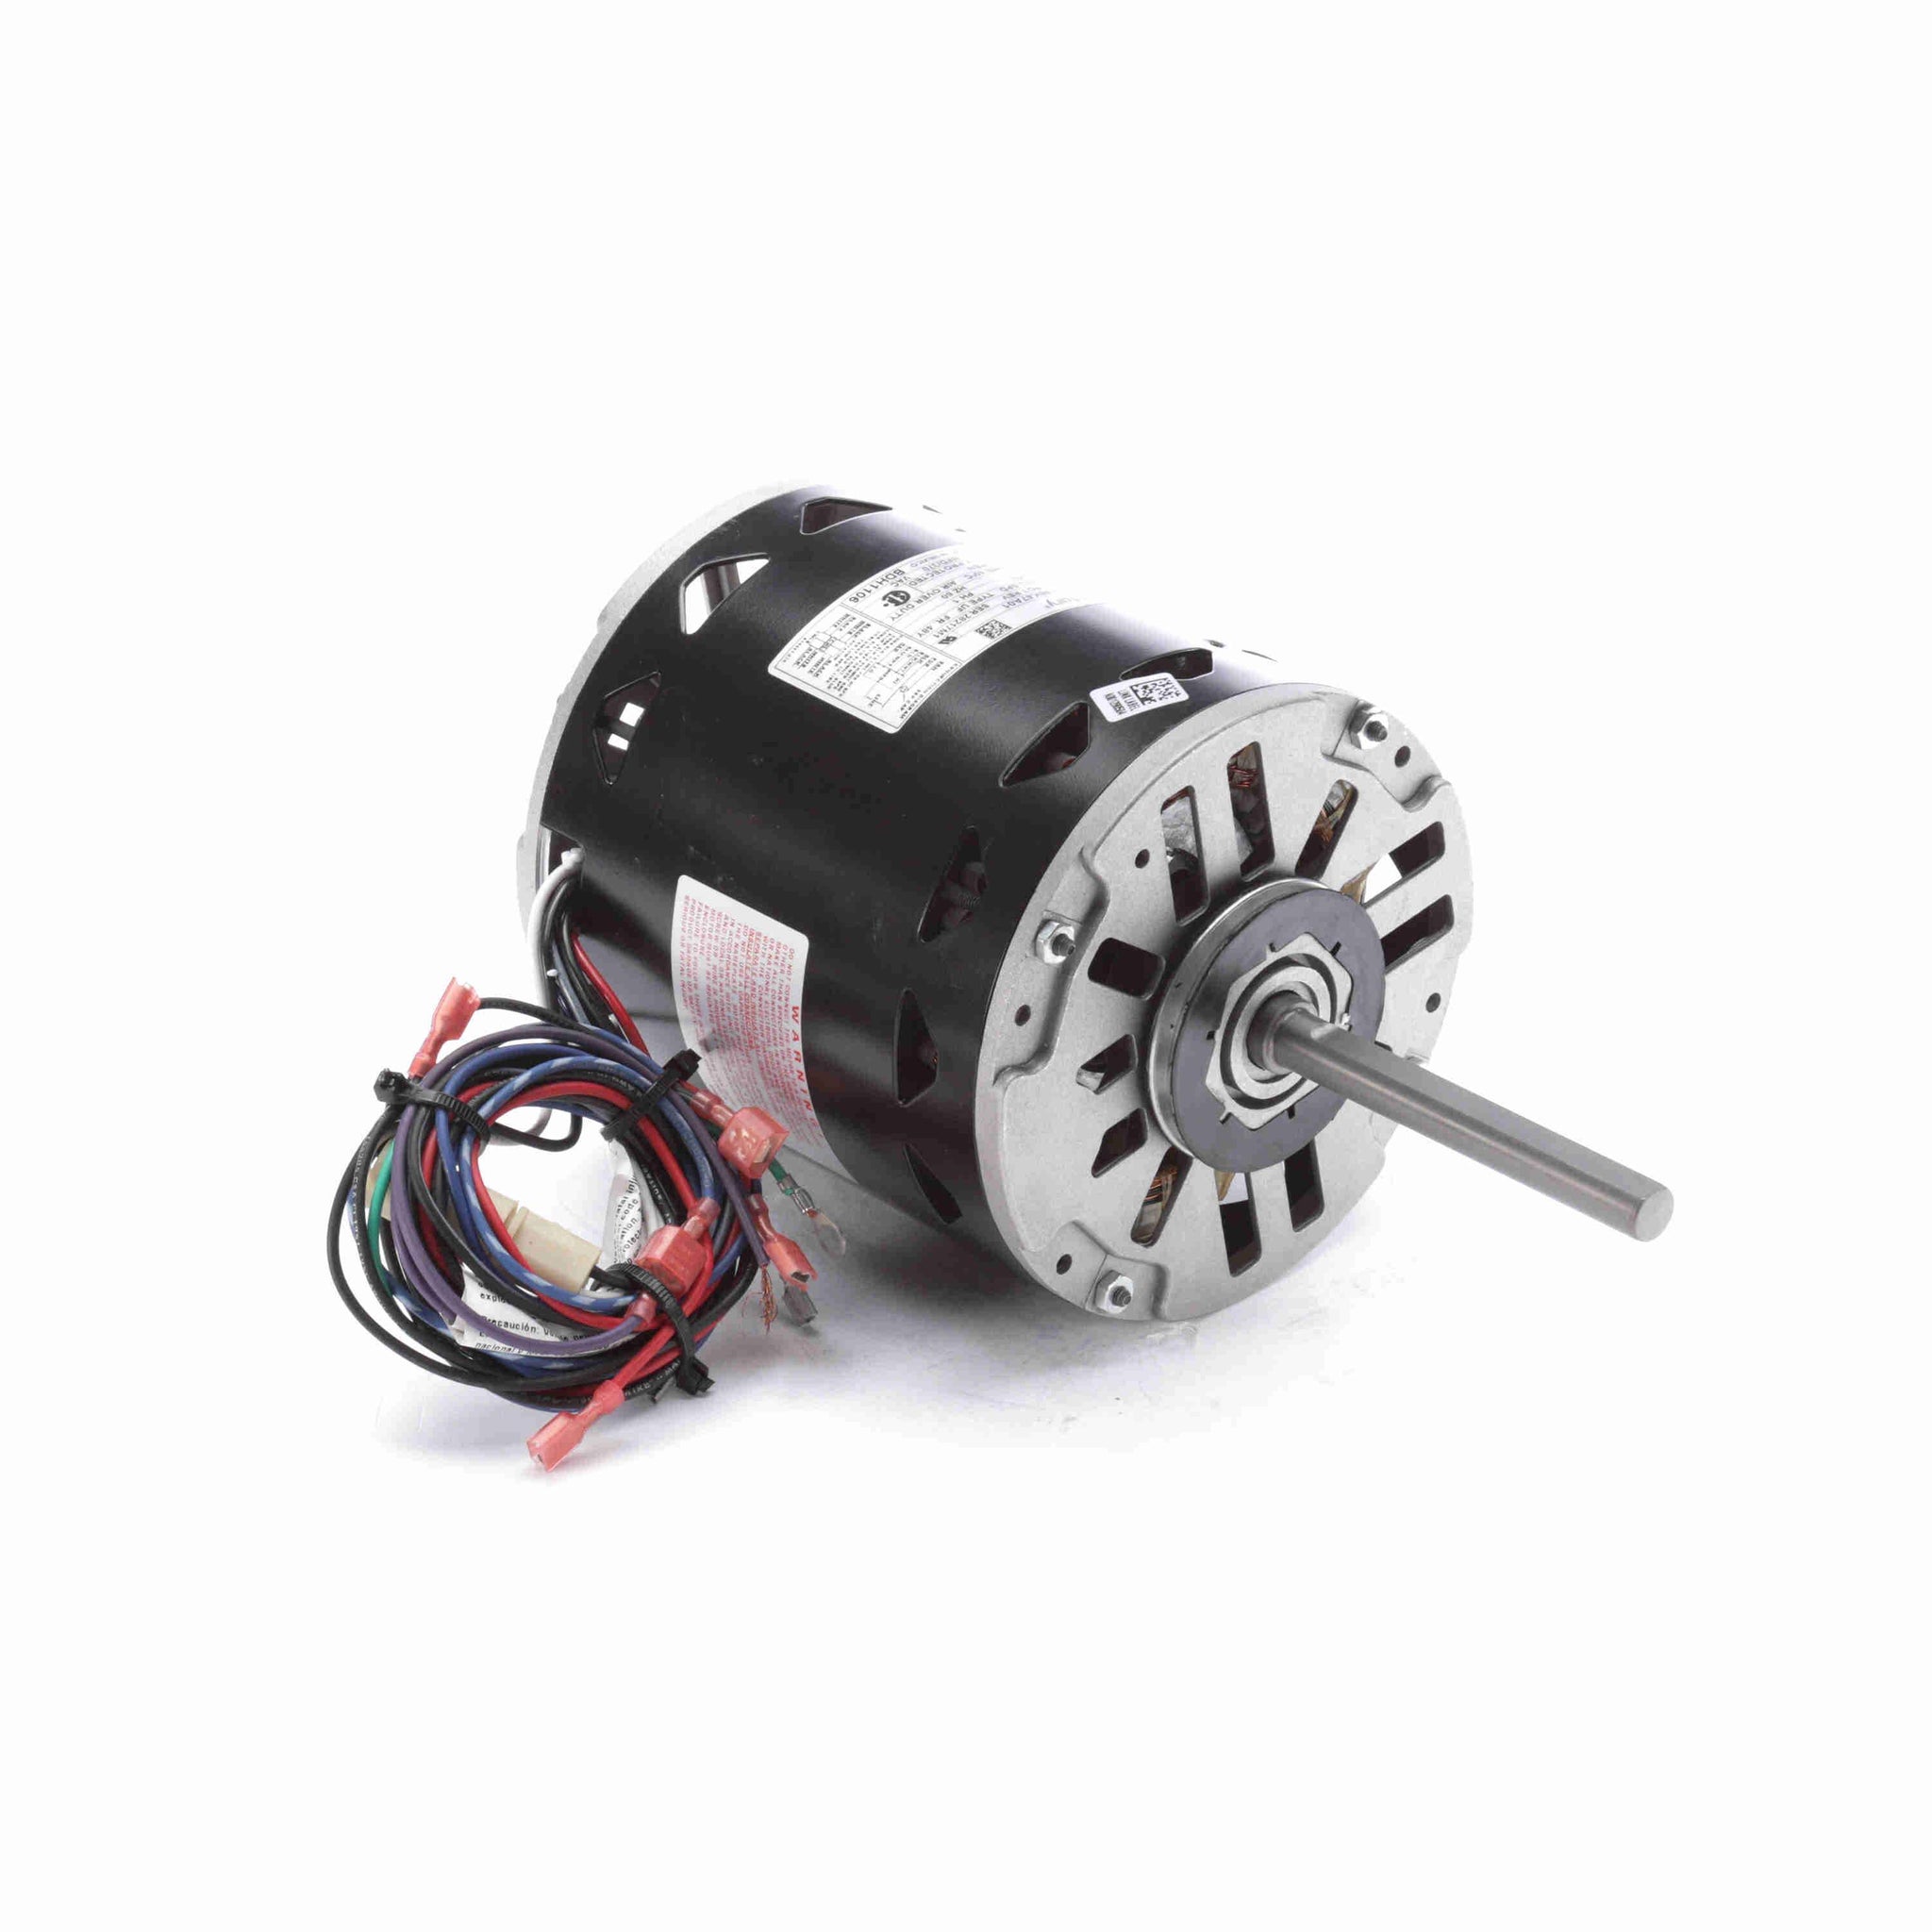 BDH1106 - 1 HP Fan & Blower Motor, 1100 RPM, 3 Speed, 460 Volts, 48 Frame, OAO - Hardware & Moreee